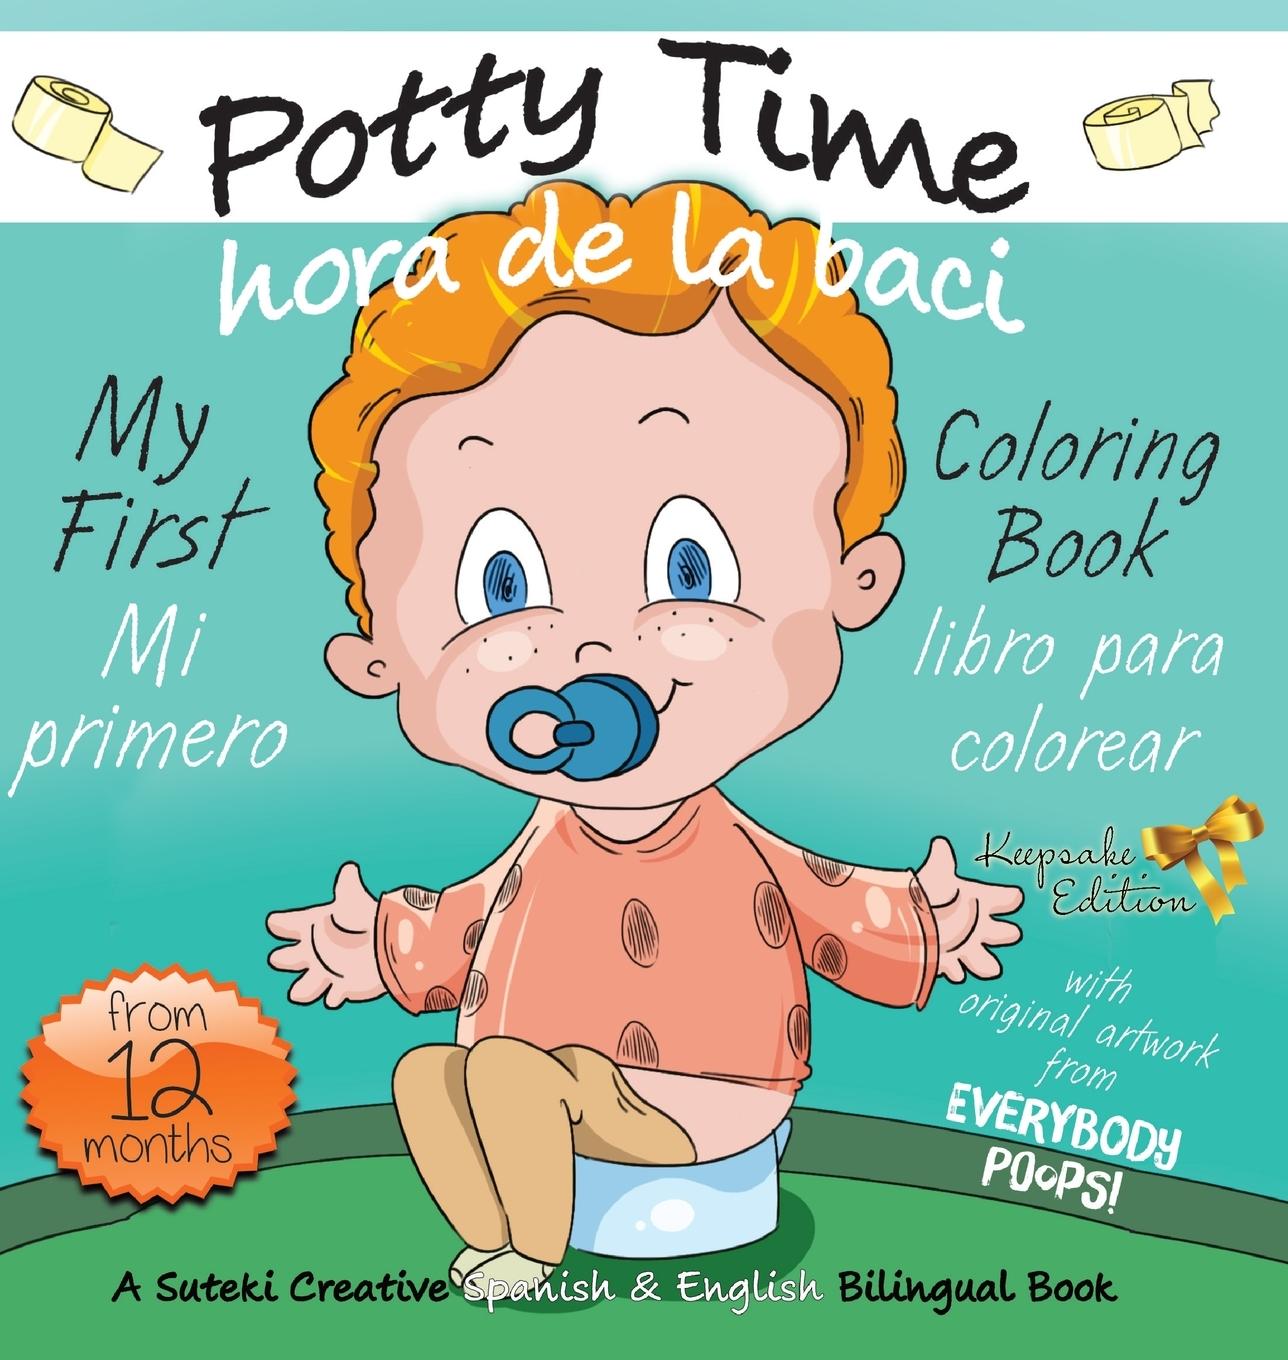 Könyv My First Potty Time Coloring Book / Mi primero hora de la baci libro para colorear 